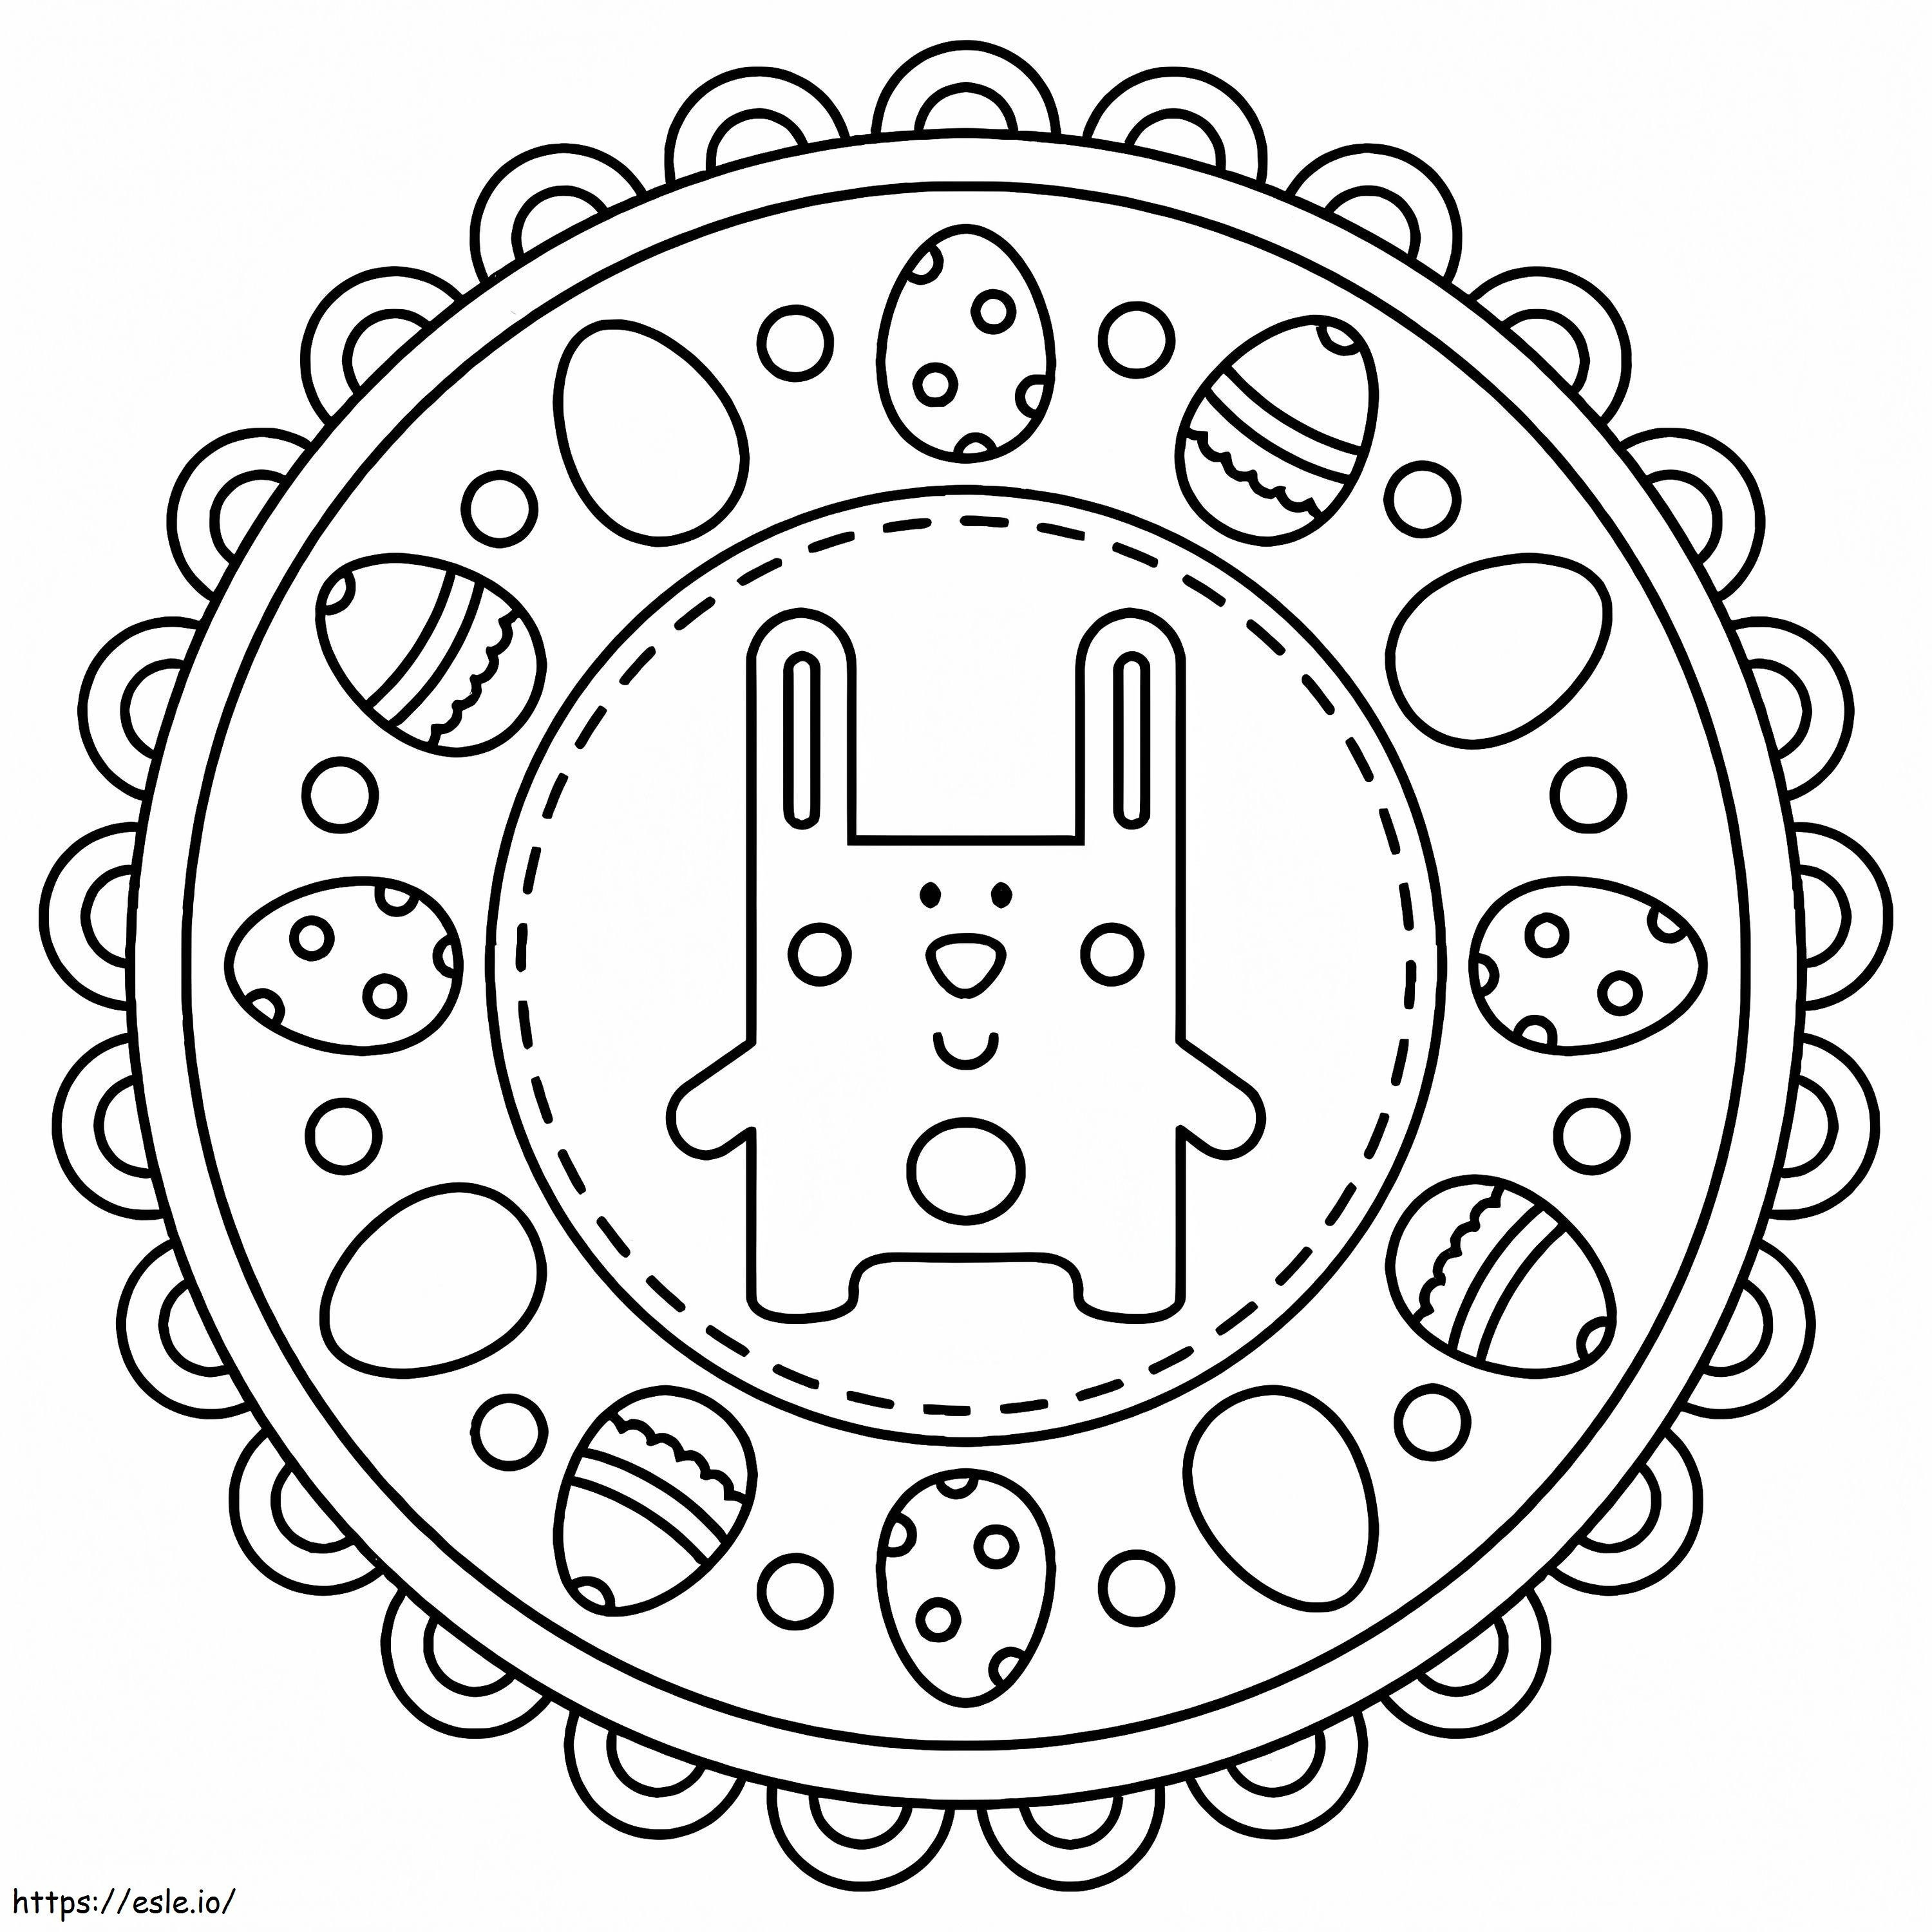 Mandala de Páscoa com coelho fofo para colorir